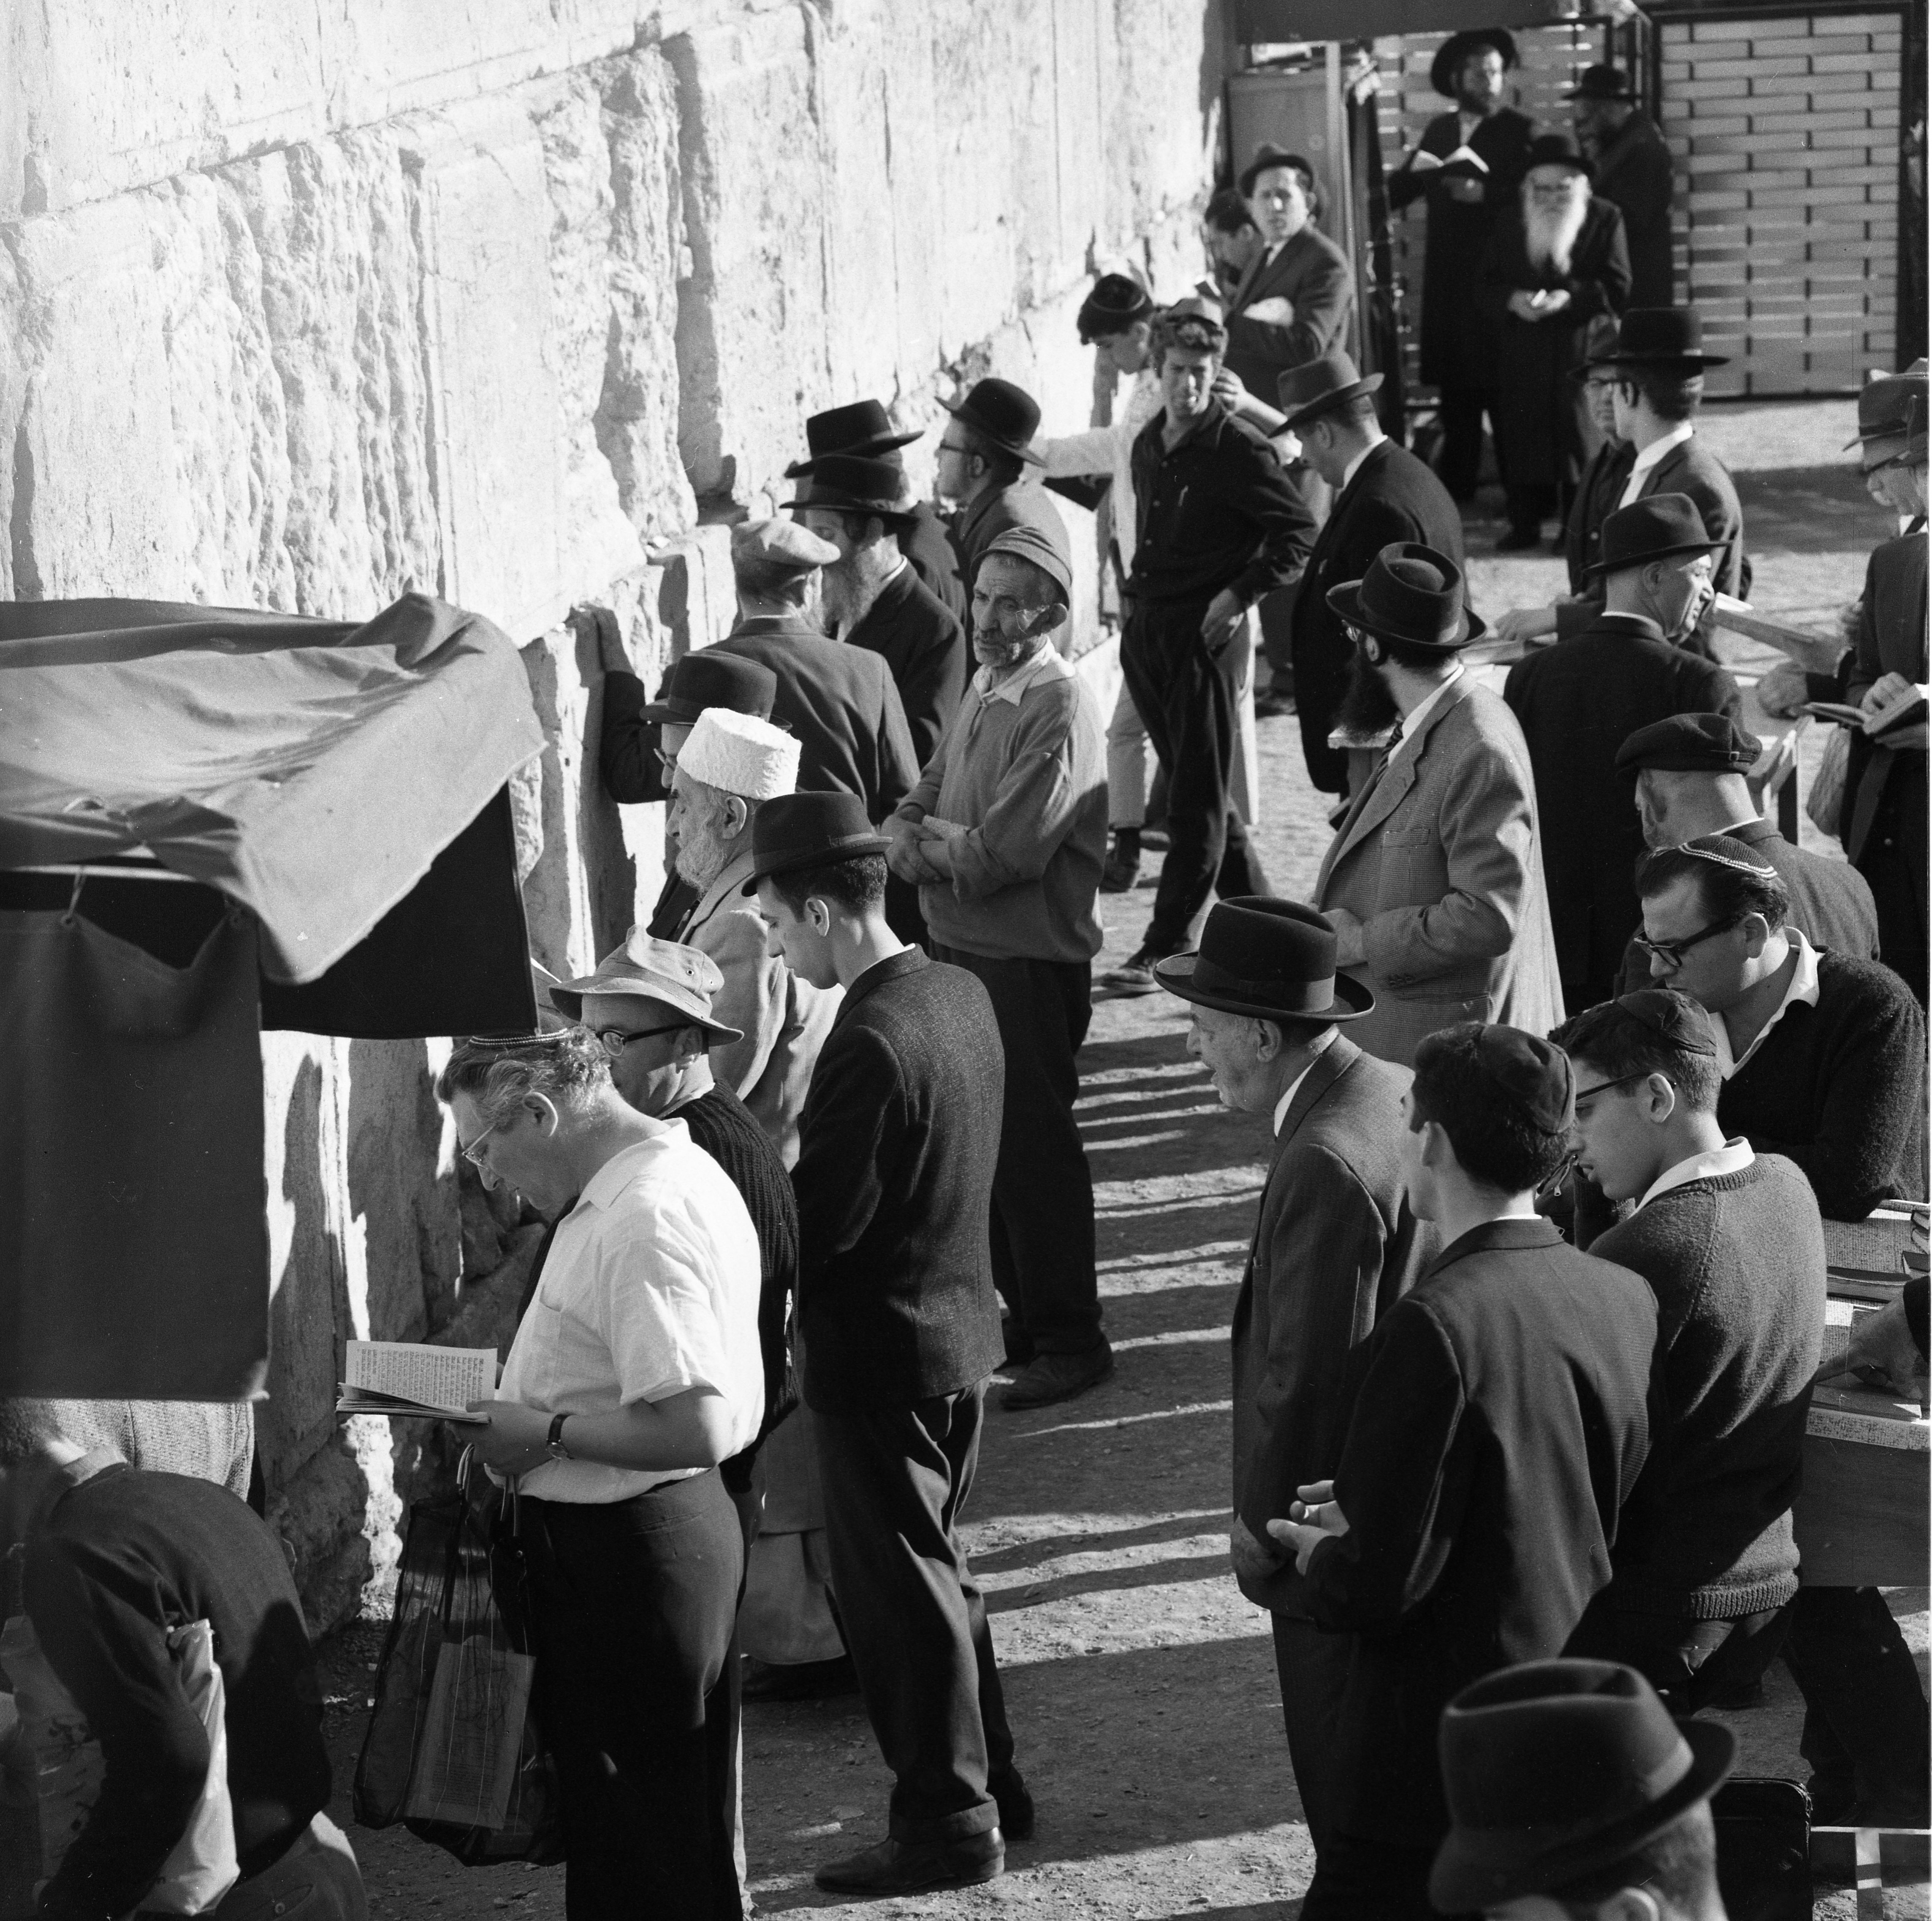  ירושלים יהודים בתפילה ליד הכותל המערבי; 1968